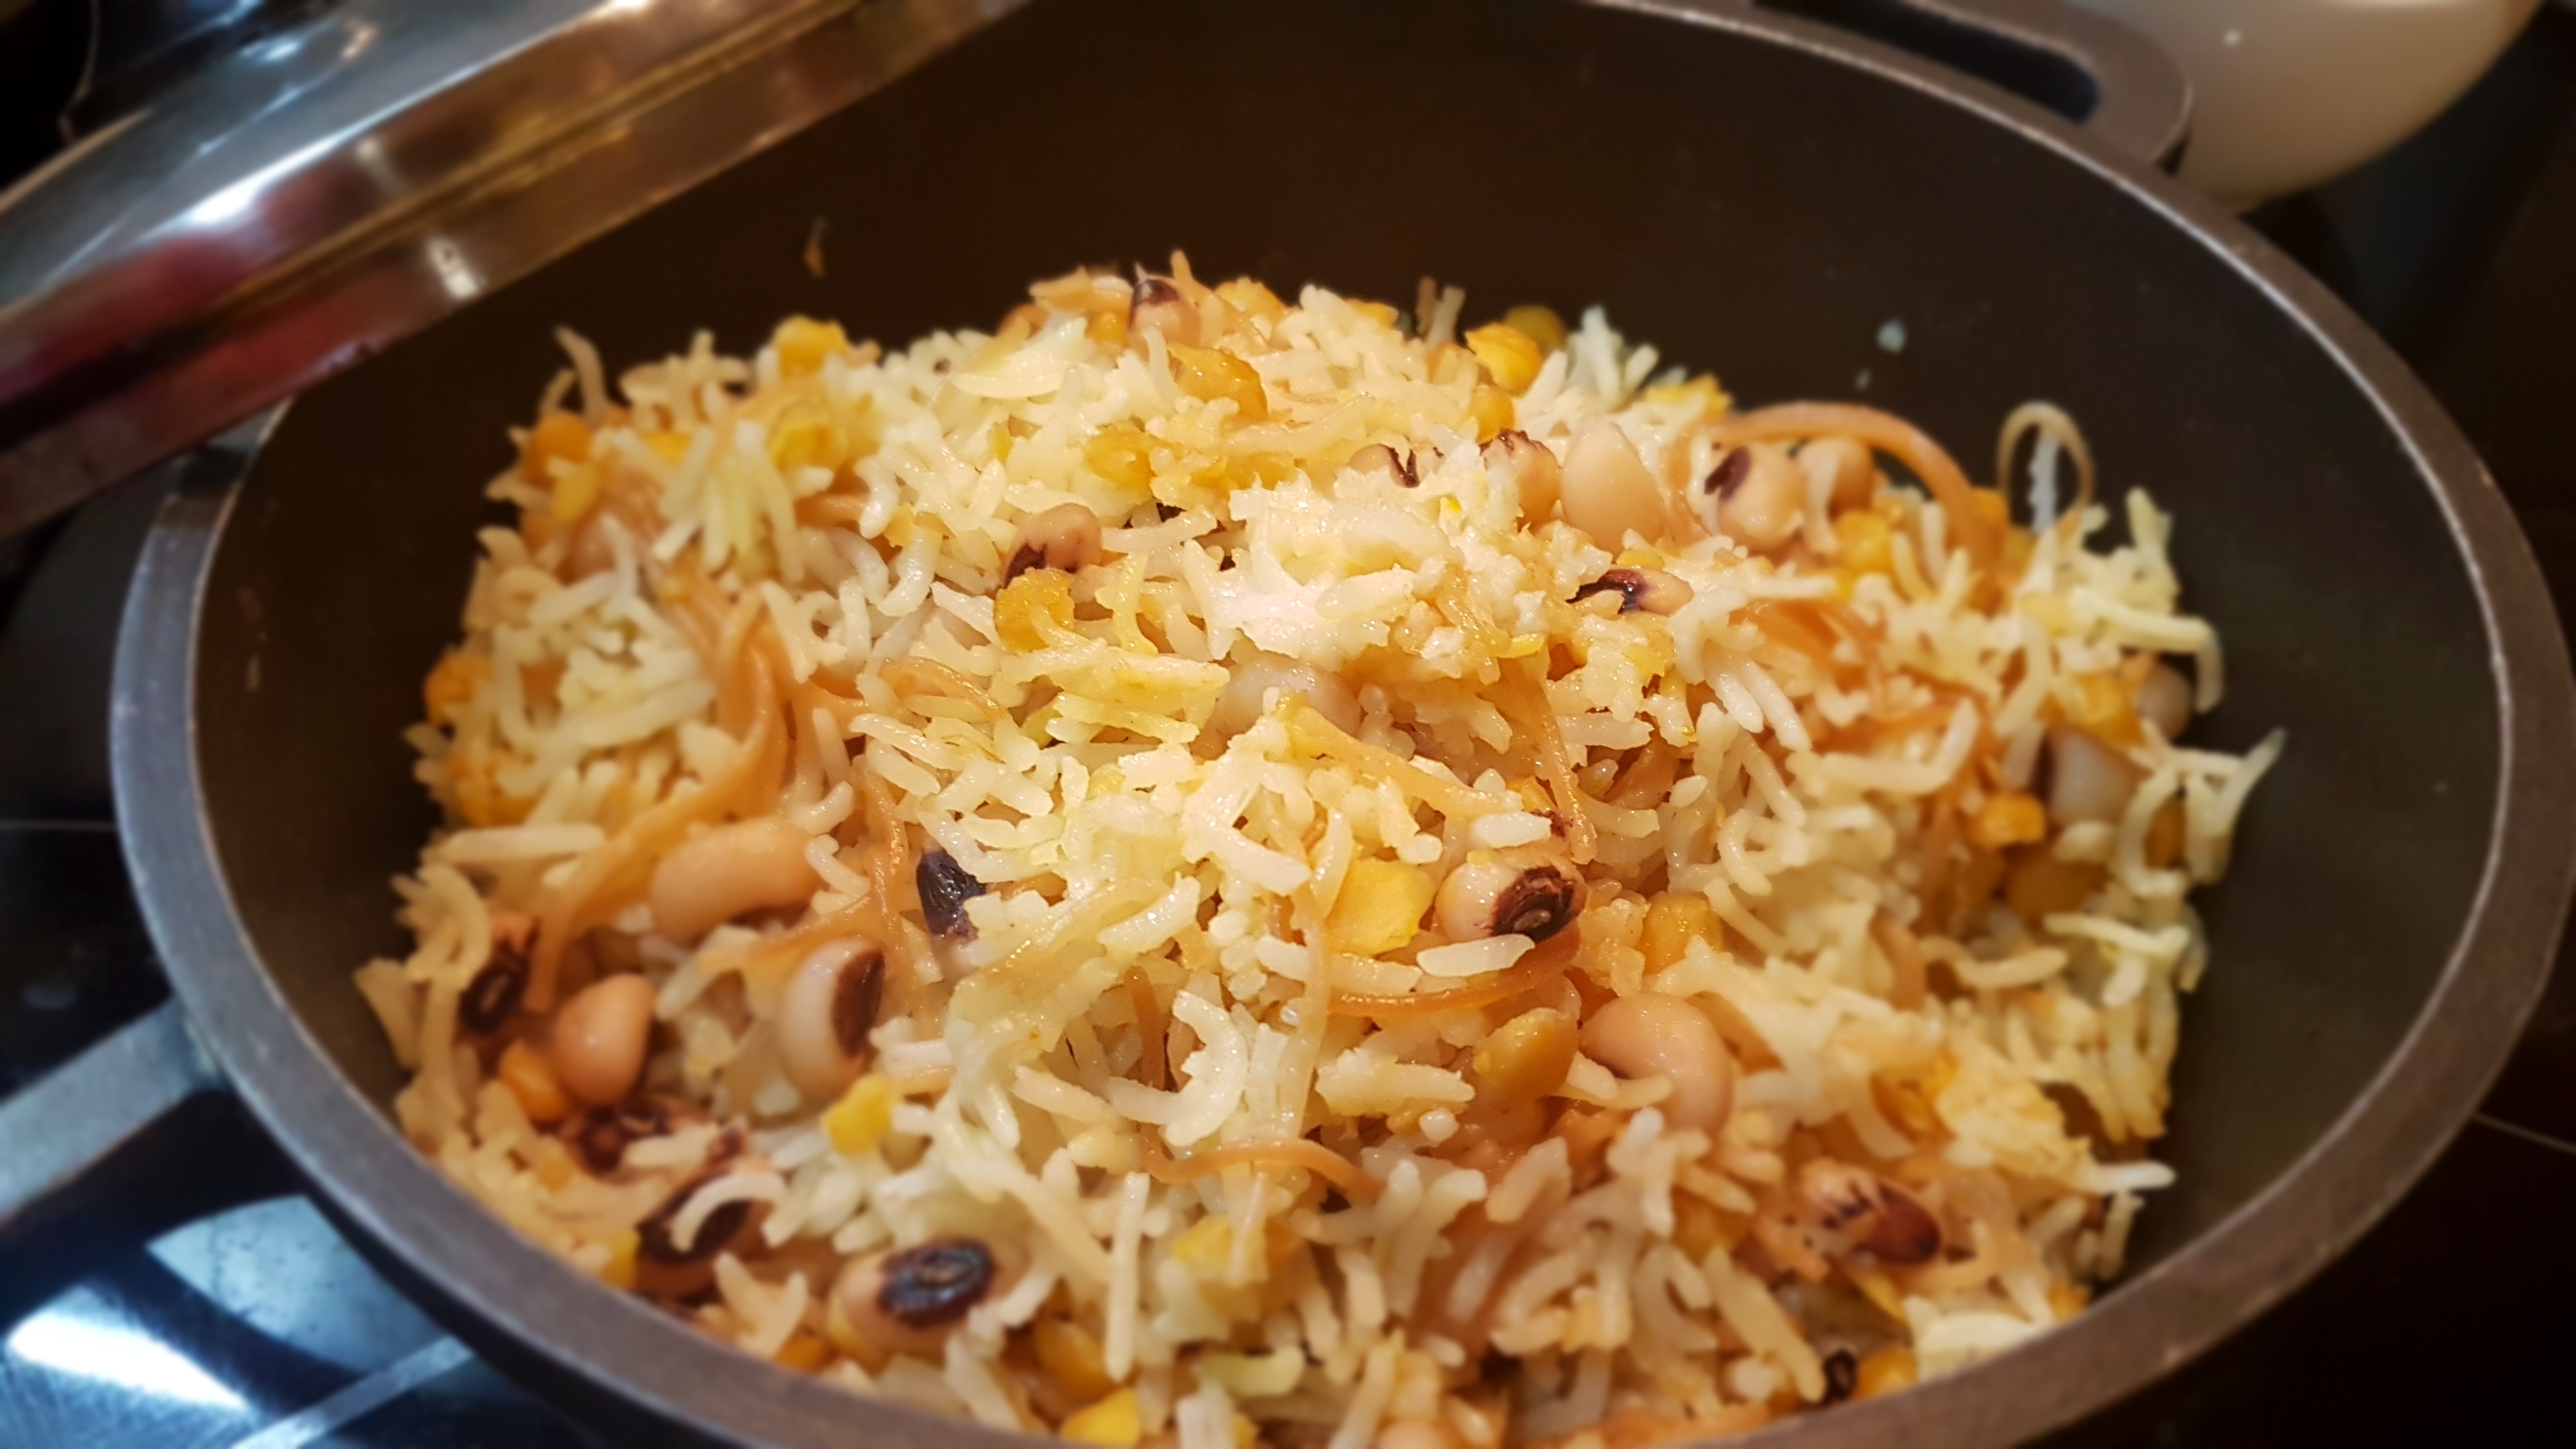 Original Persian rice brings heaven scent  home